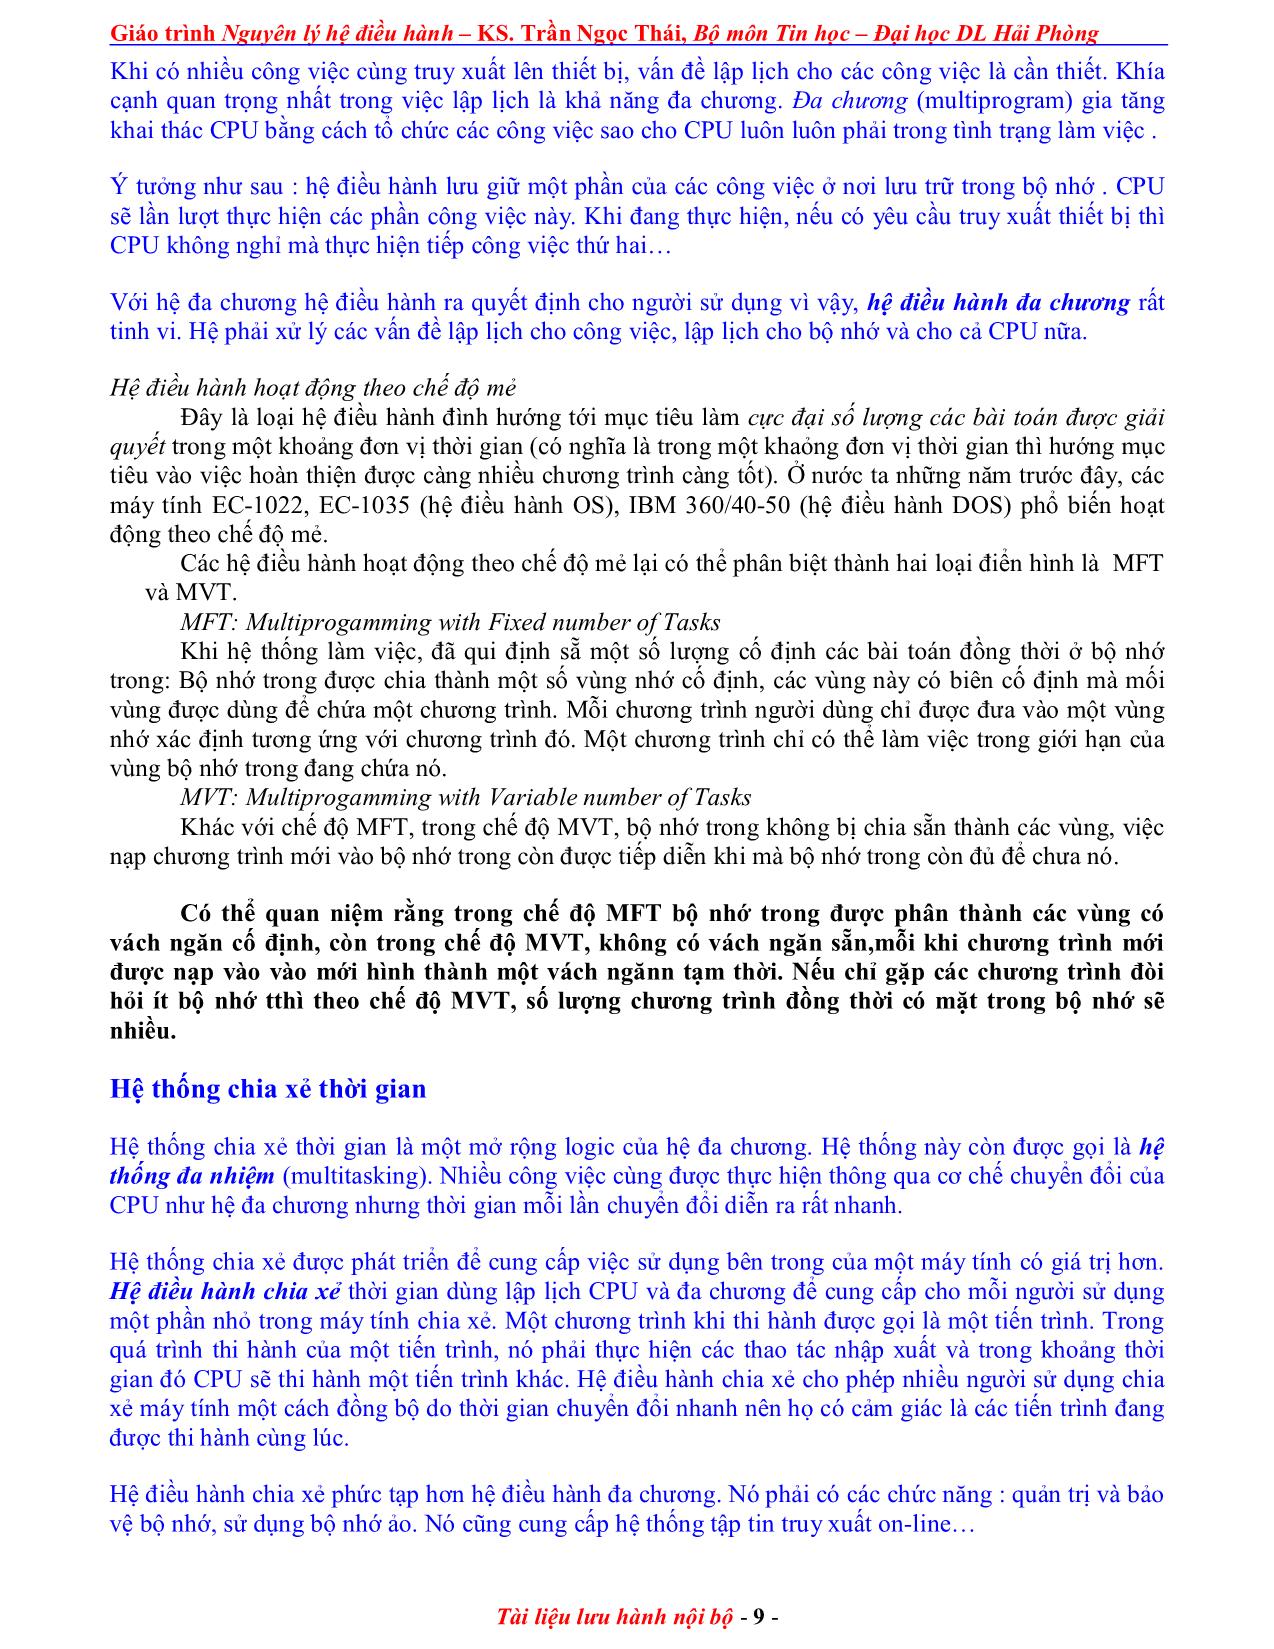 Giáo trình Nguyên lý điều hành (Phần 1) trang 9